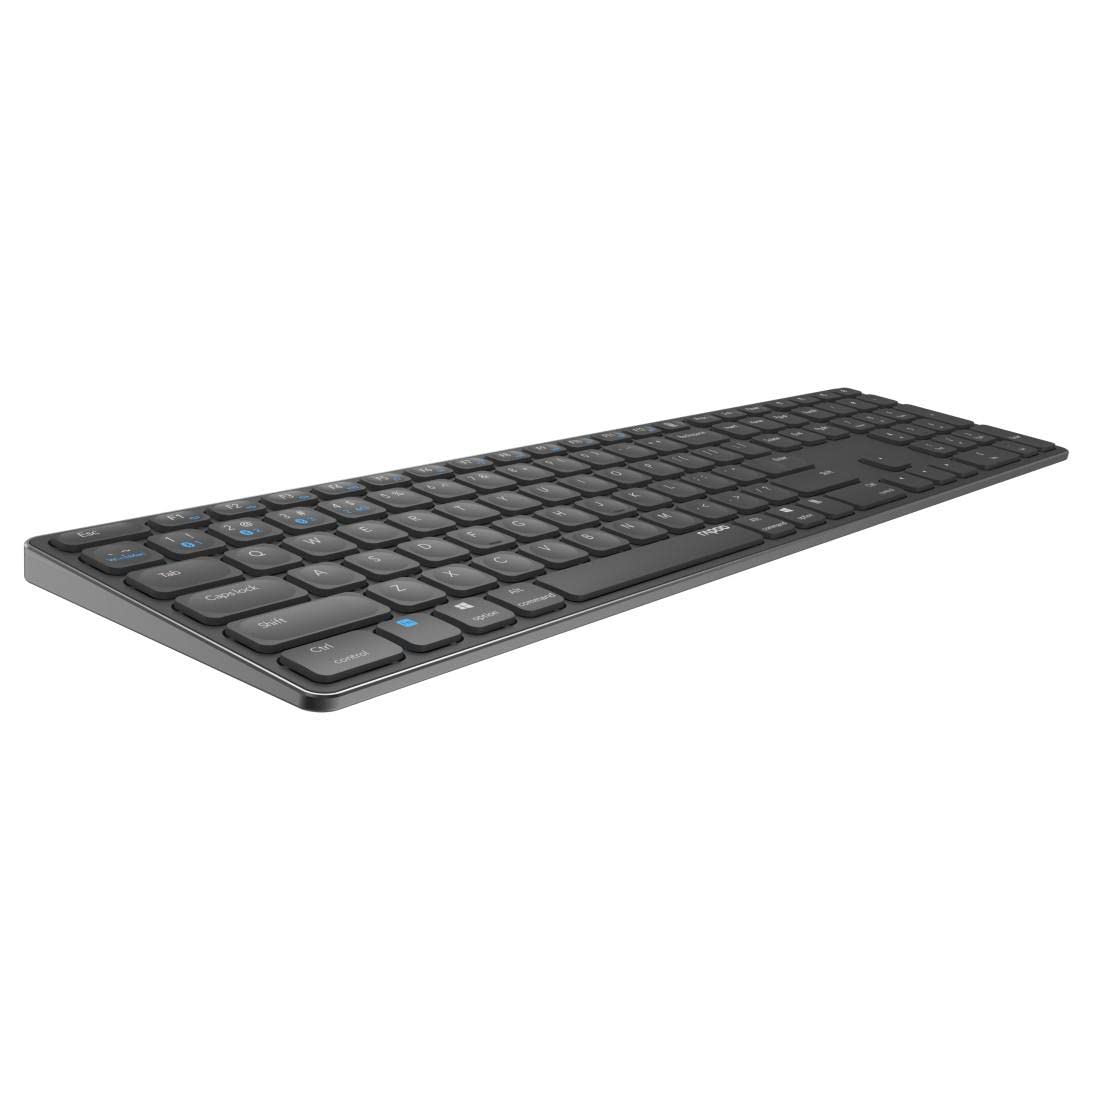 Rapoo E9800M kabellose Tastatur wireless Keyboard flaches Aluminium Design umweltfreundlicher wiederaufladbarer Akku DE-Layout QWERTZ PC & Mac - schwarz